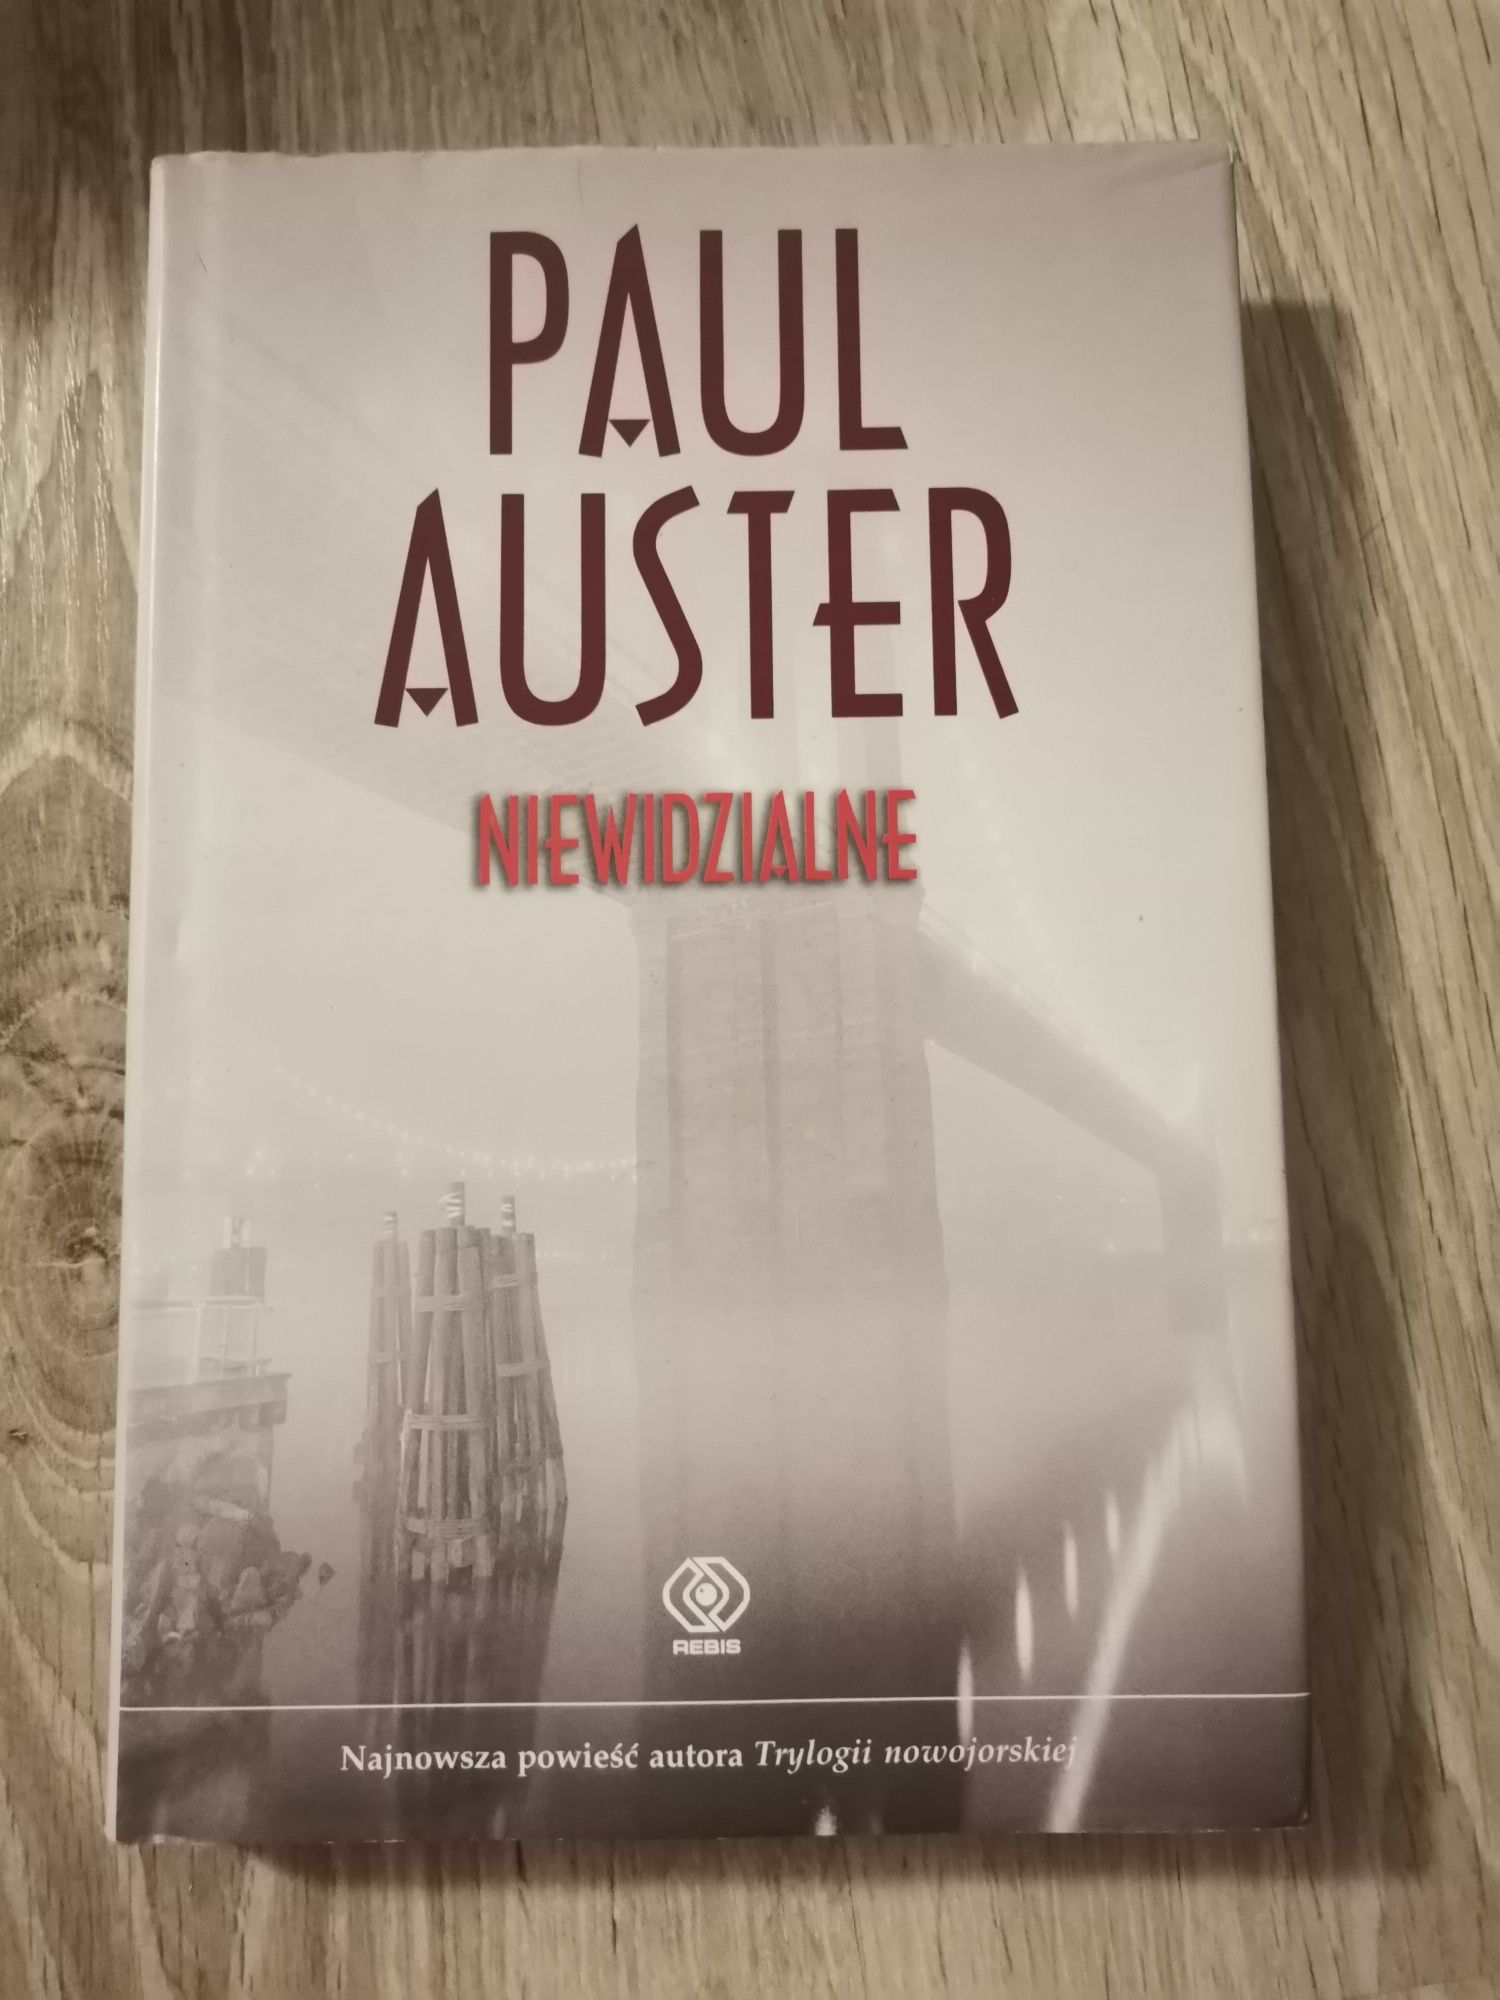 Paul Auster, Niewidzialne